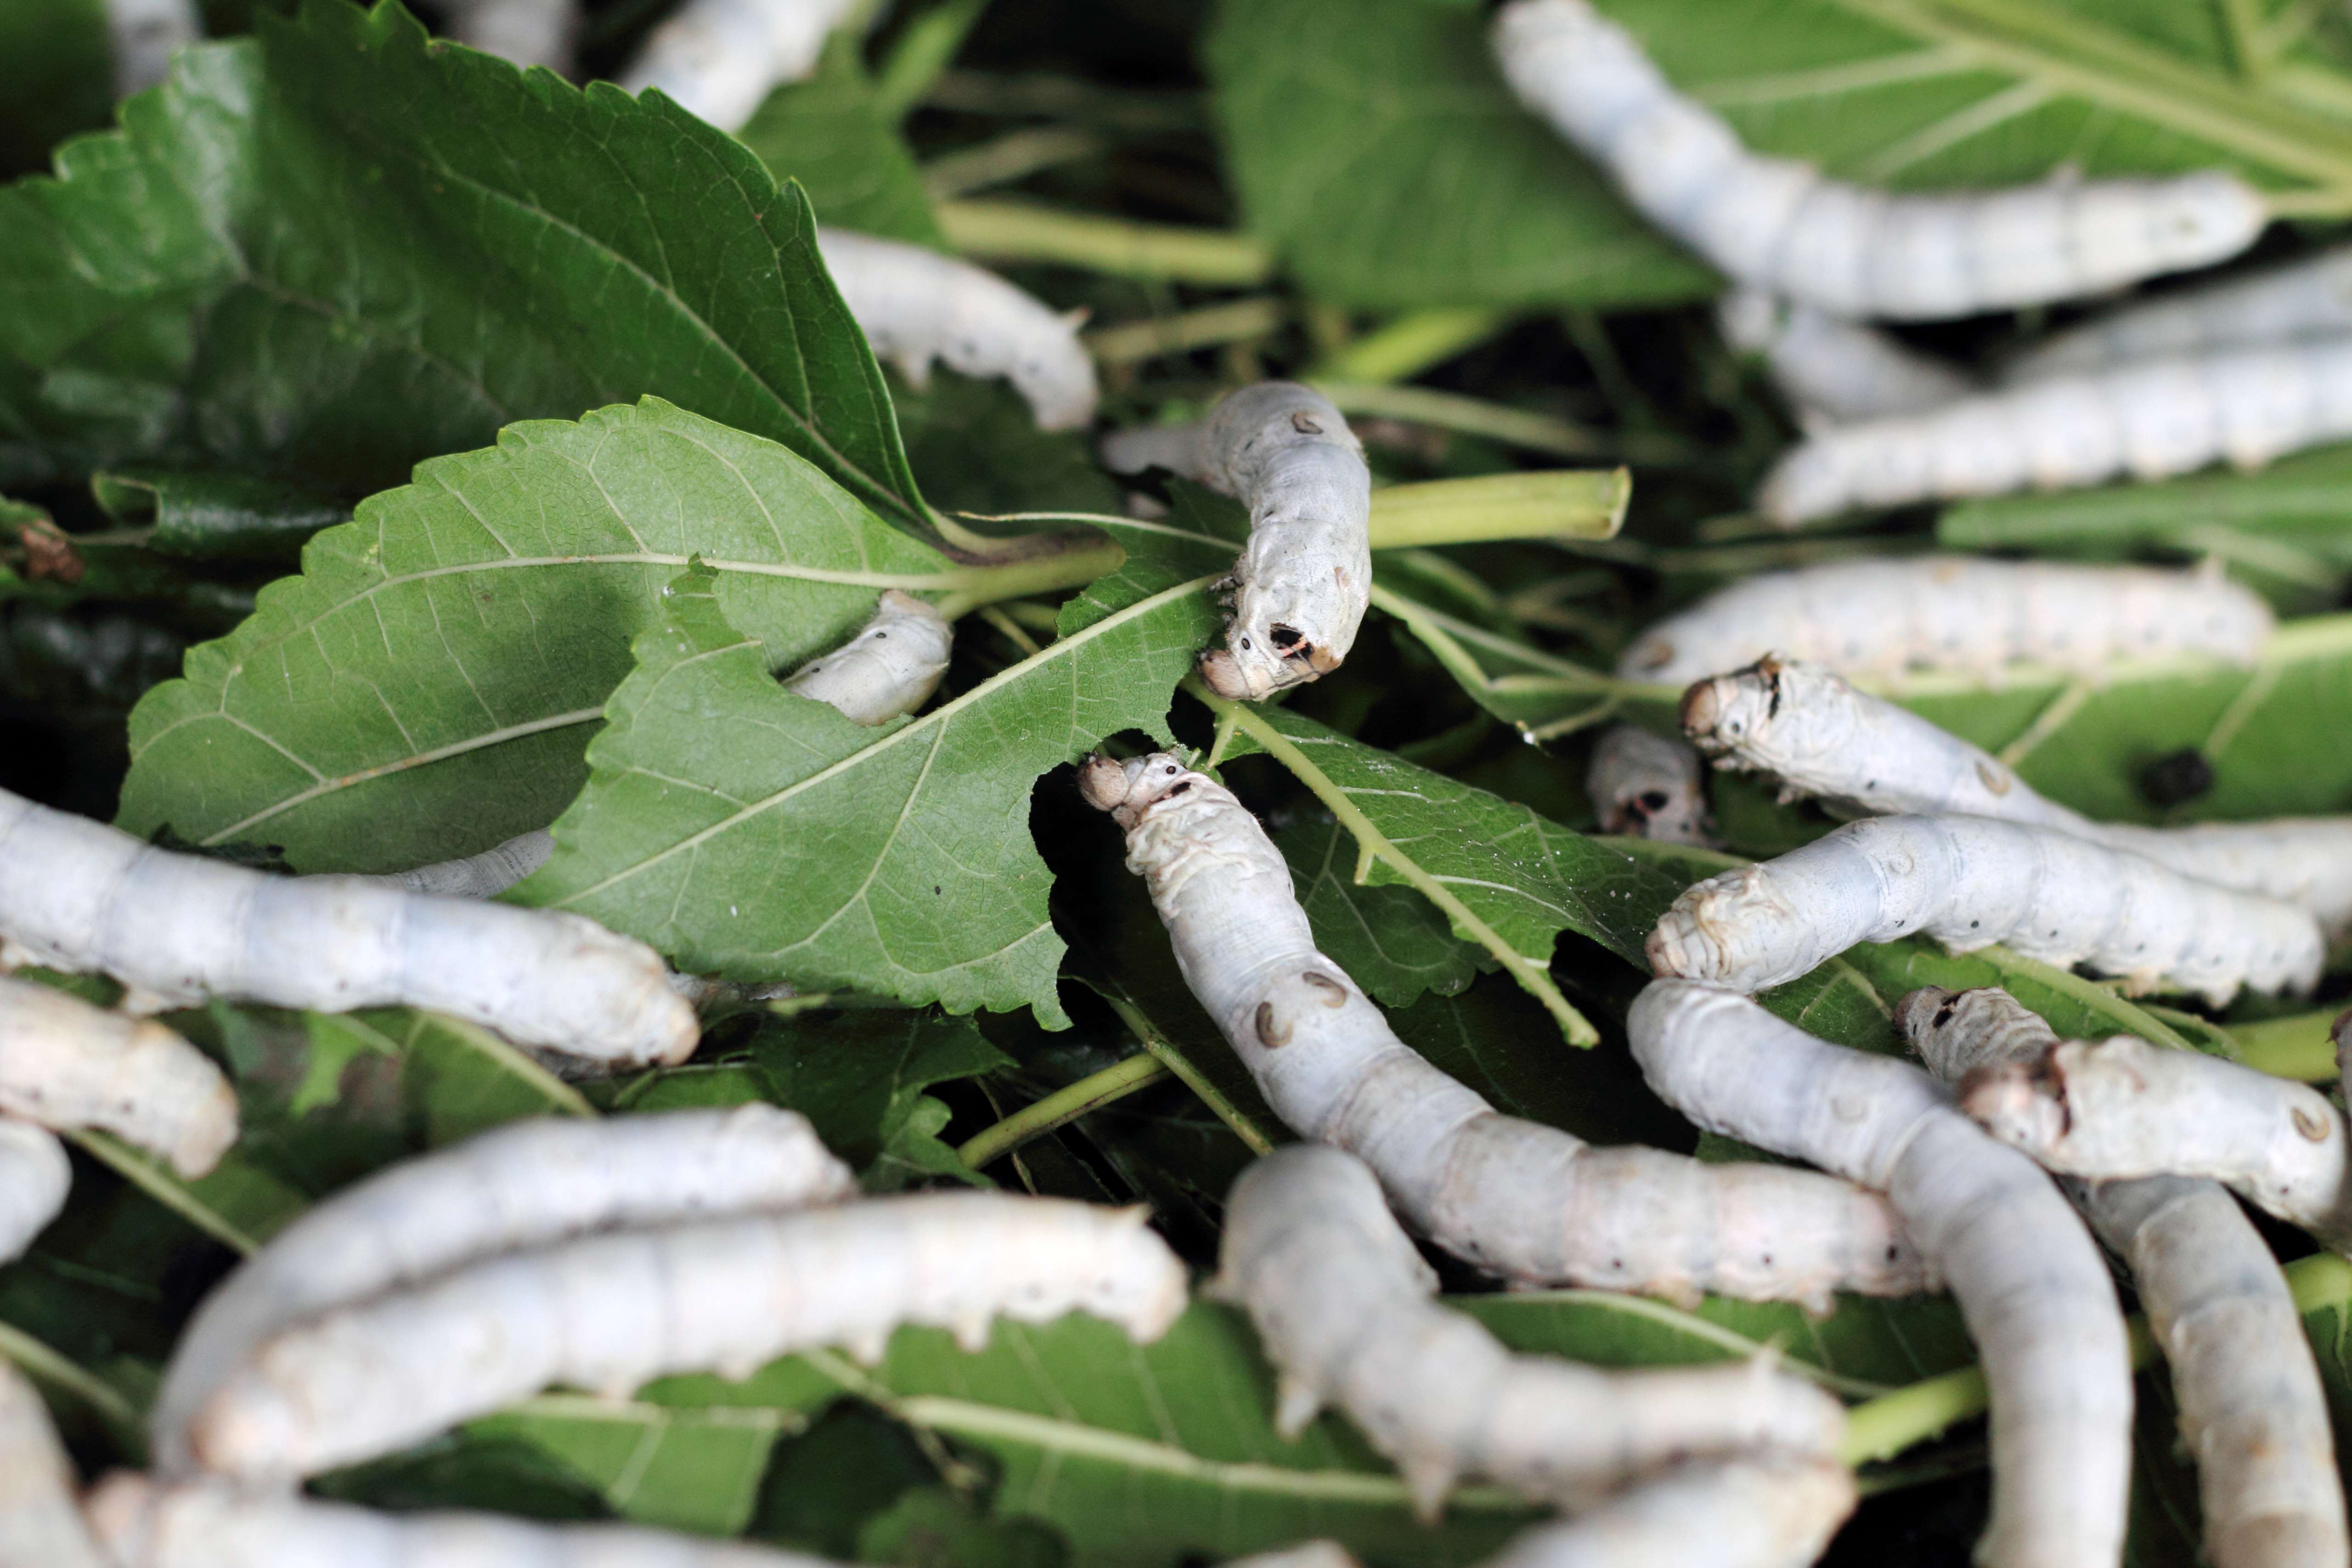 Chinese scientists repurpose silkworms as virus shredders